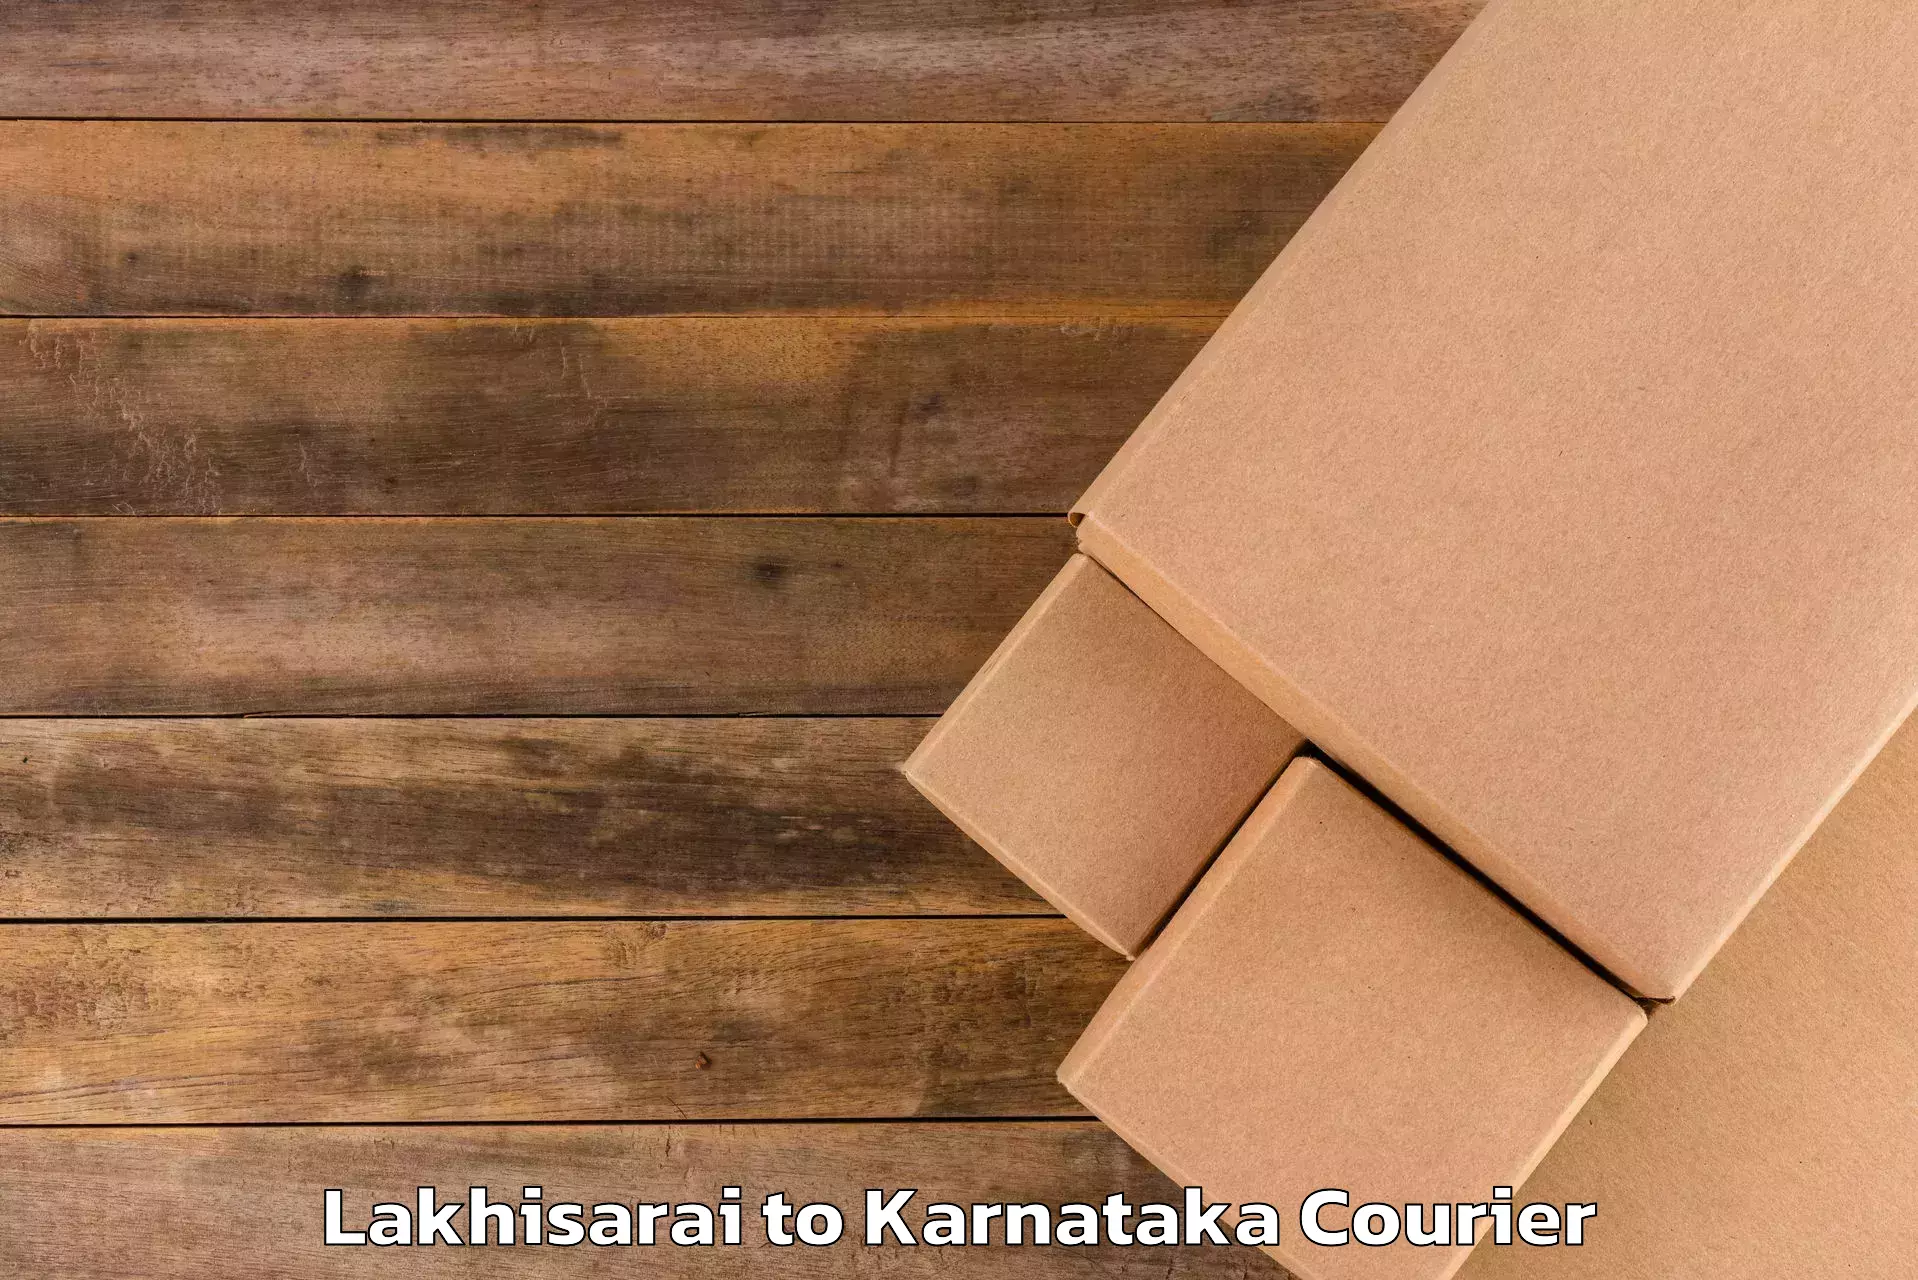 Luggage transport consulting Lakhisarai to Mangalore